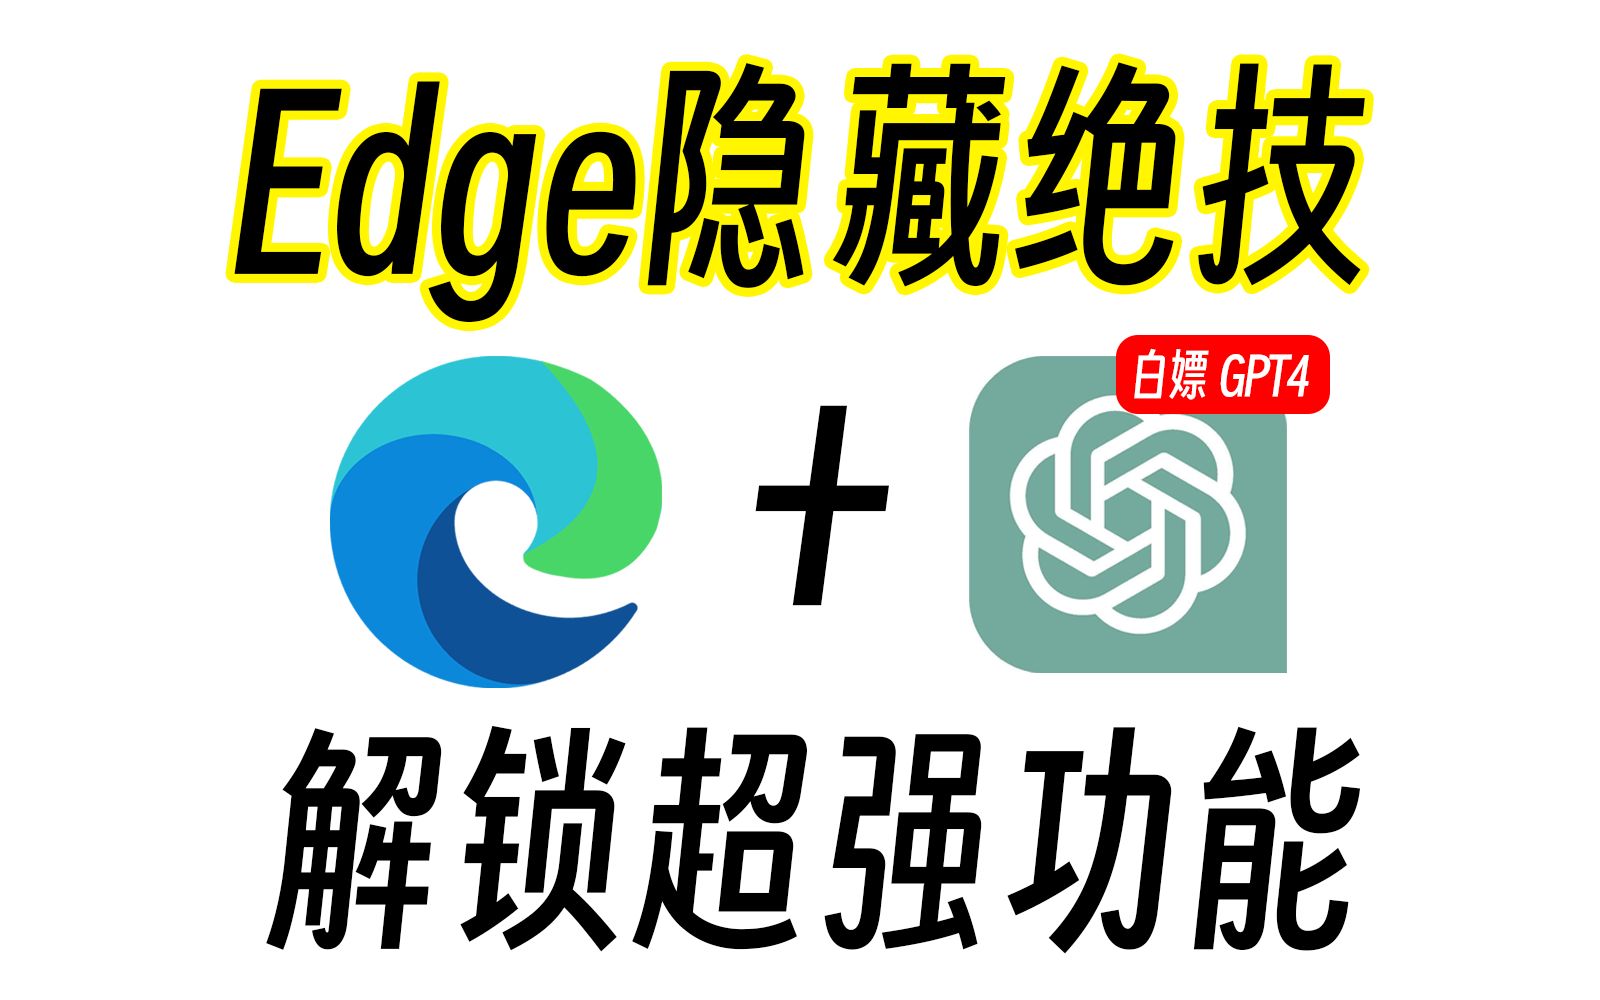 【务必收藏】解锁 Edge 浏览器高级隐藏功能！！